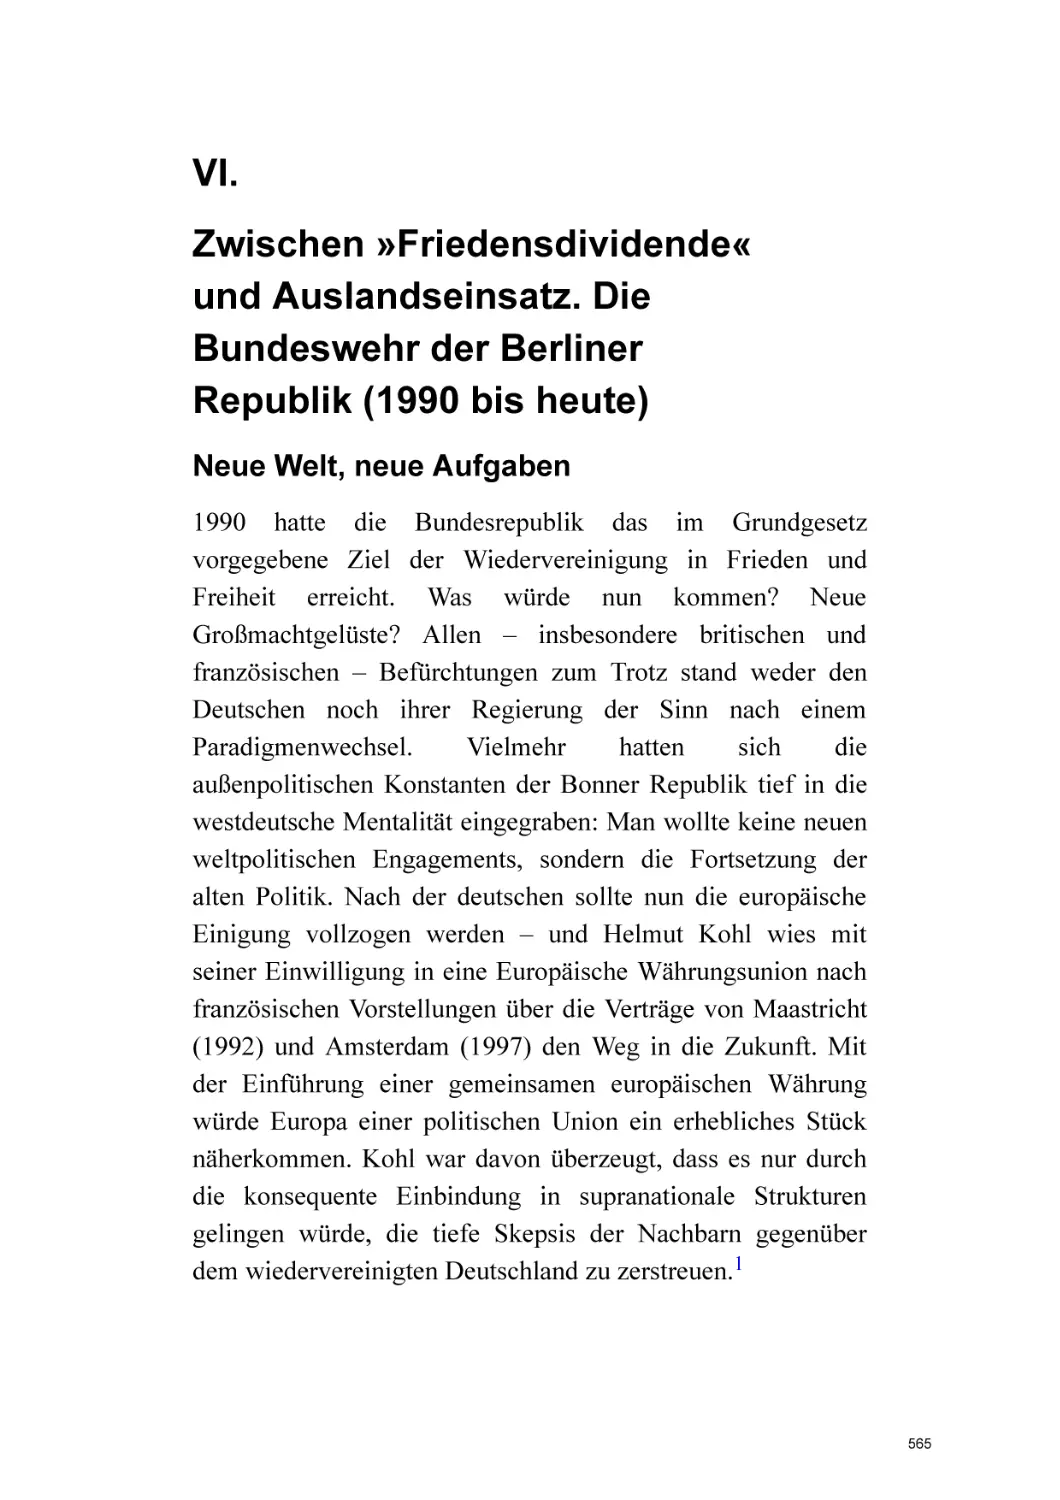 VI. Zwischen »Friedensdividende« und Auslandseinsatz. Die Bundeswehr der Berliner Republik (1990 bis heute)
Neue Welt, neue Aufgaben